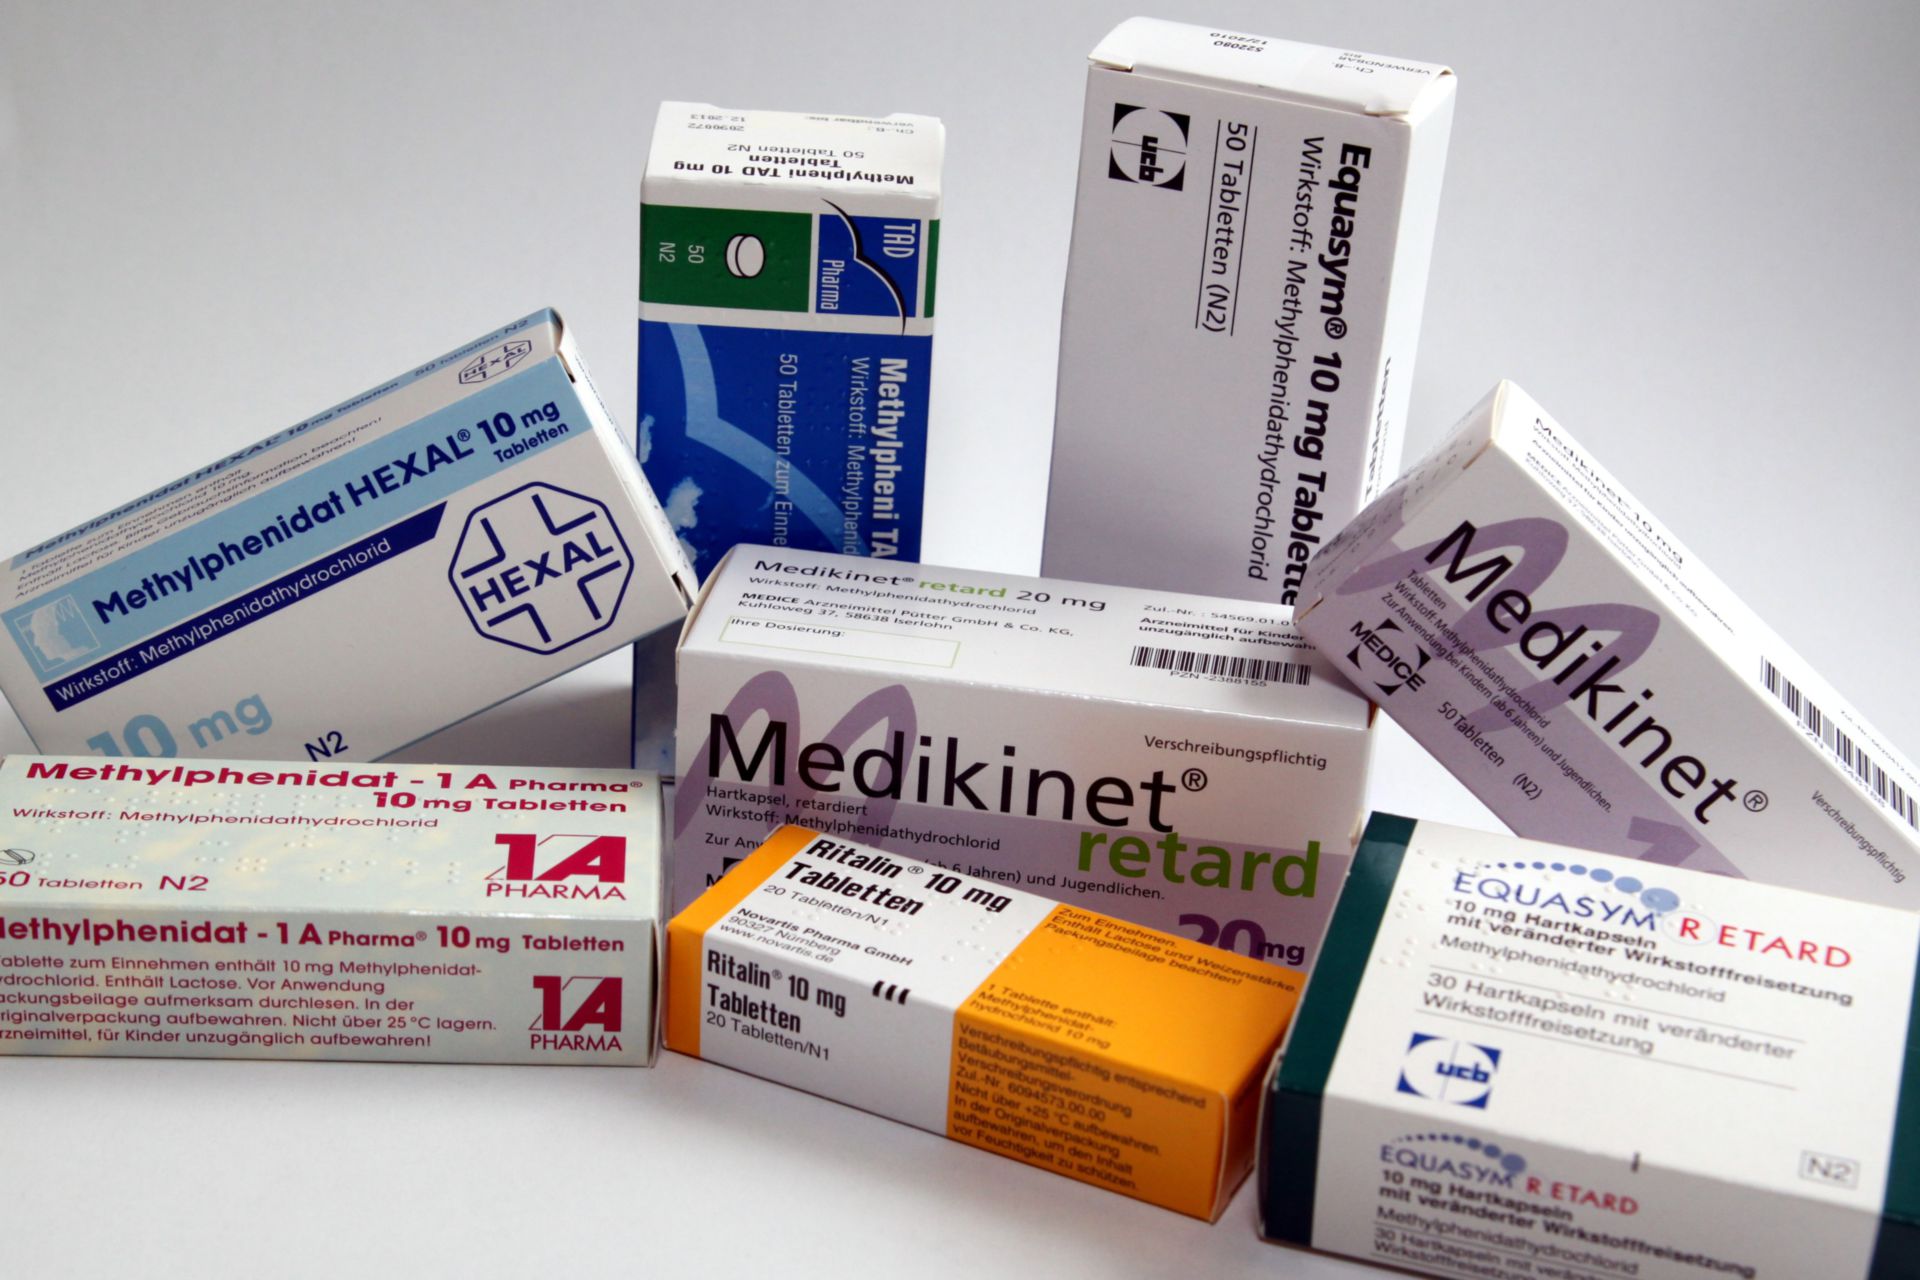 Methylphenidate (several German products)